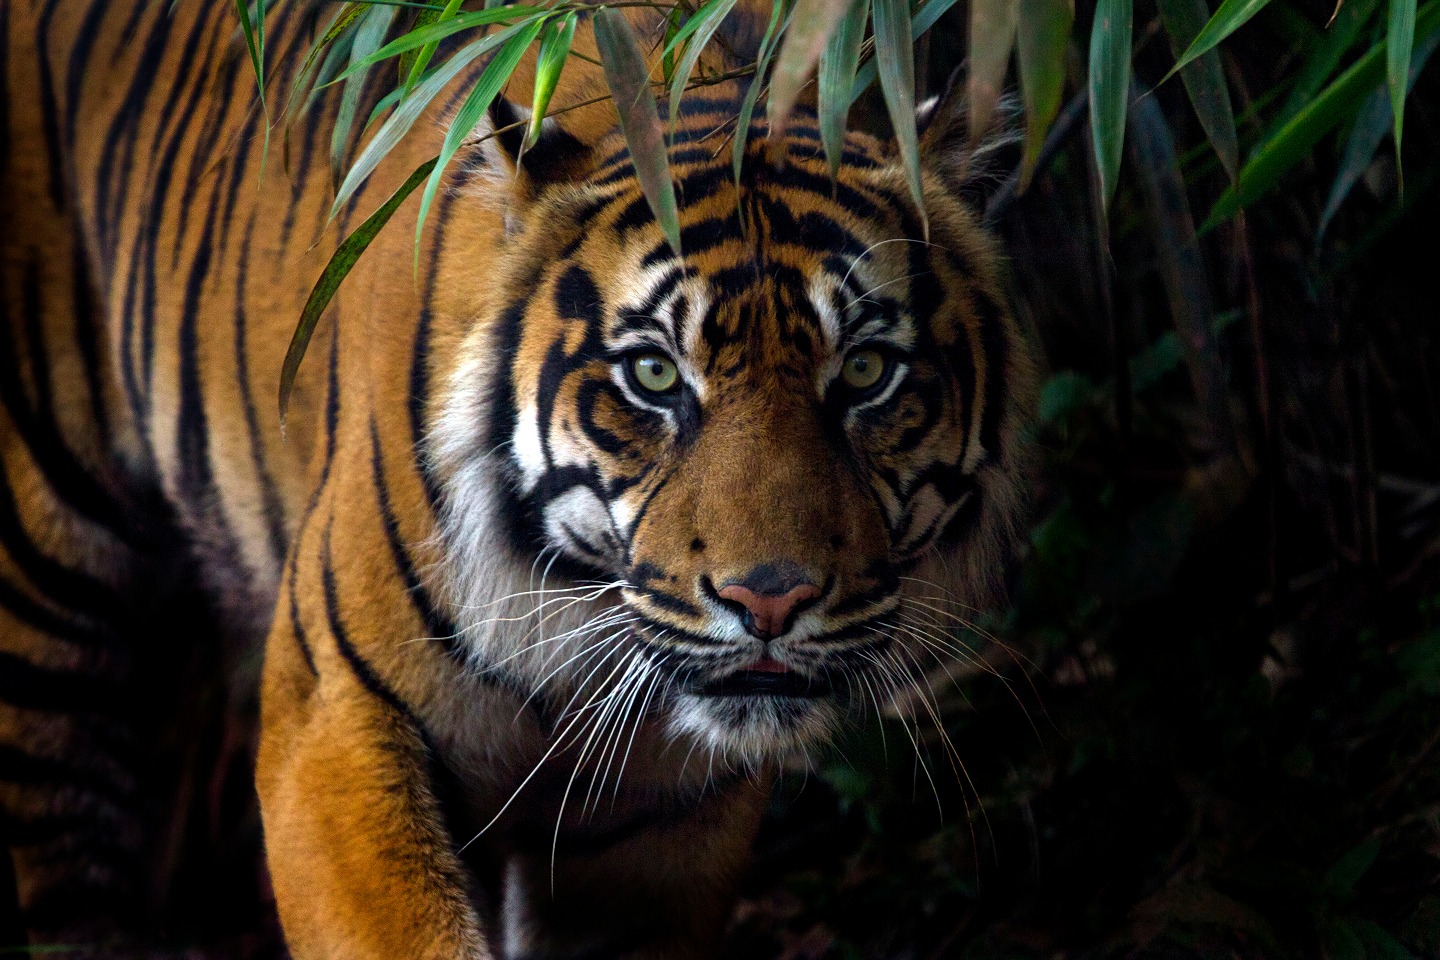 Pekerja Perusahaan HTI di Riau Diduga Tewas Diterkam Harimau